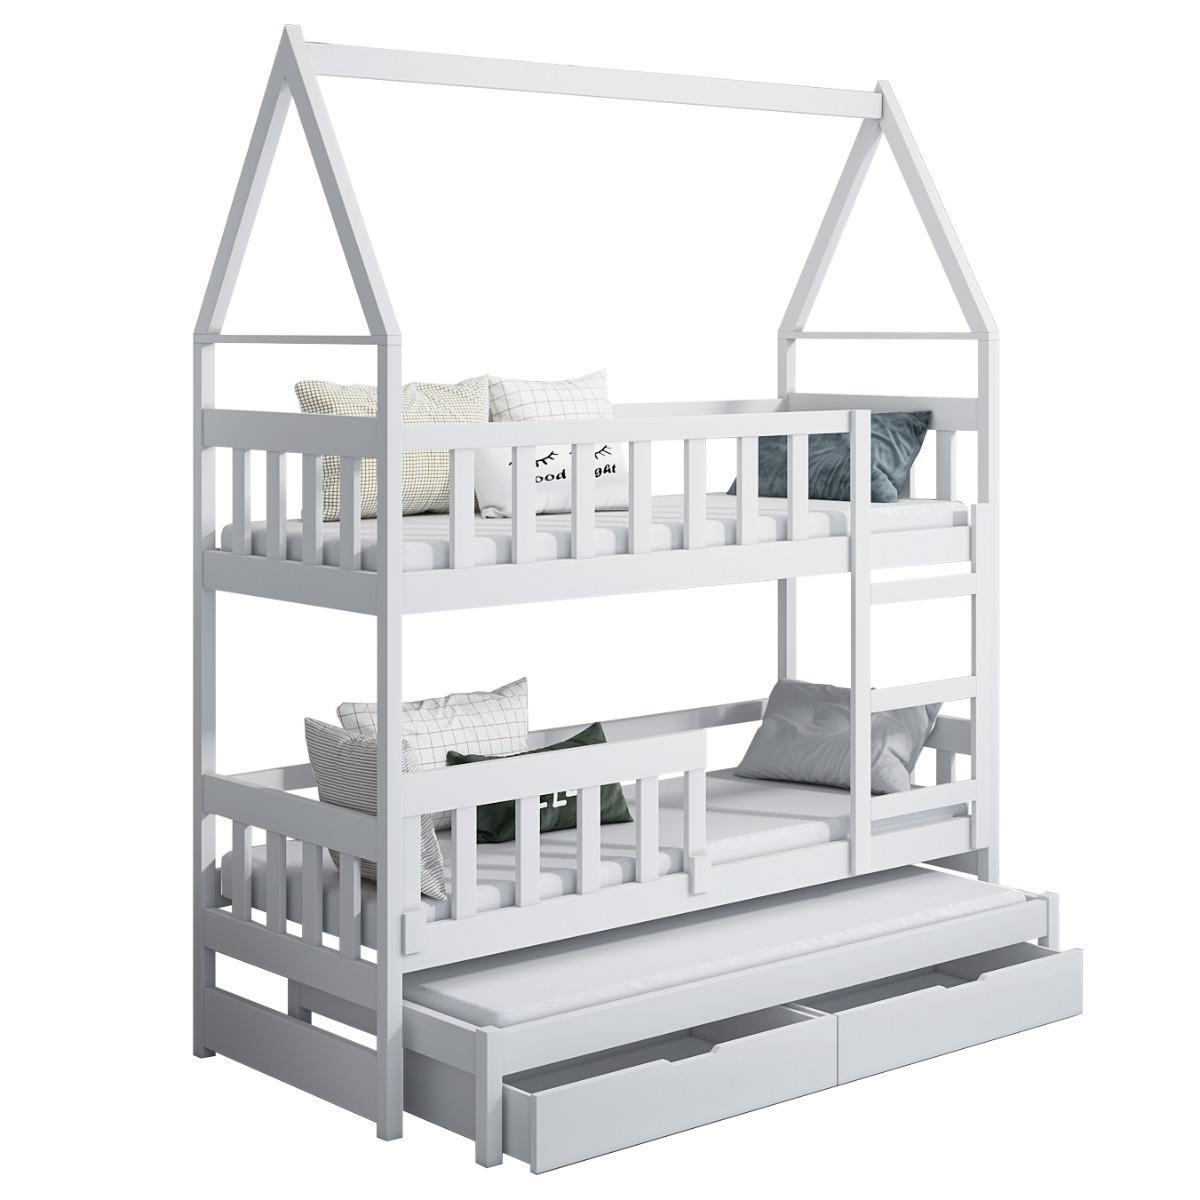 Łóżko piętrowe DOMEK drewno szare miejsce do spania dla 3 osób + materace piankowe 180x75 cm + barierka dolna do pokoju dziecka 4 Full Screen